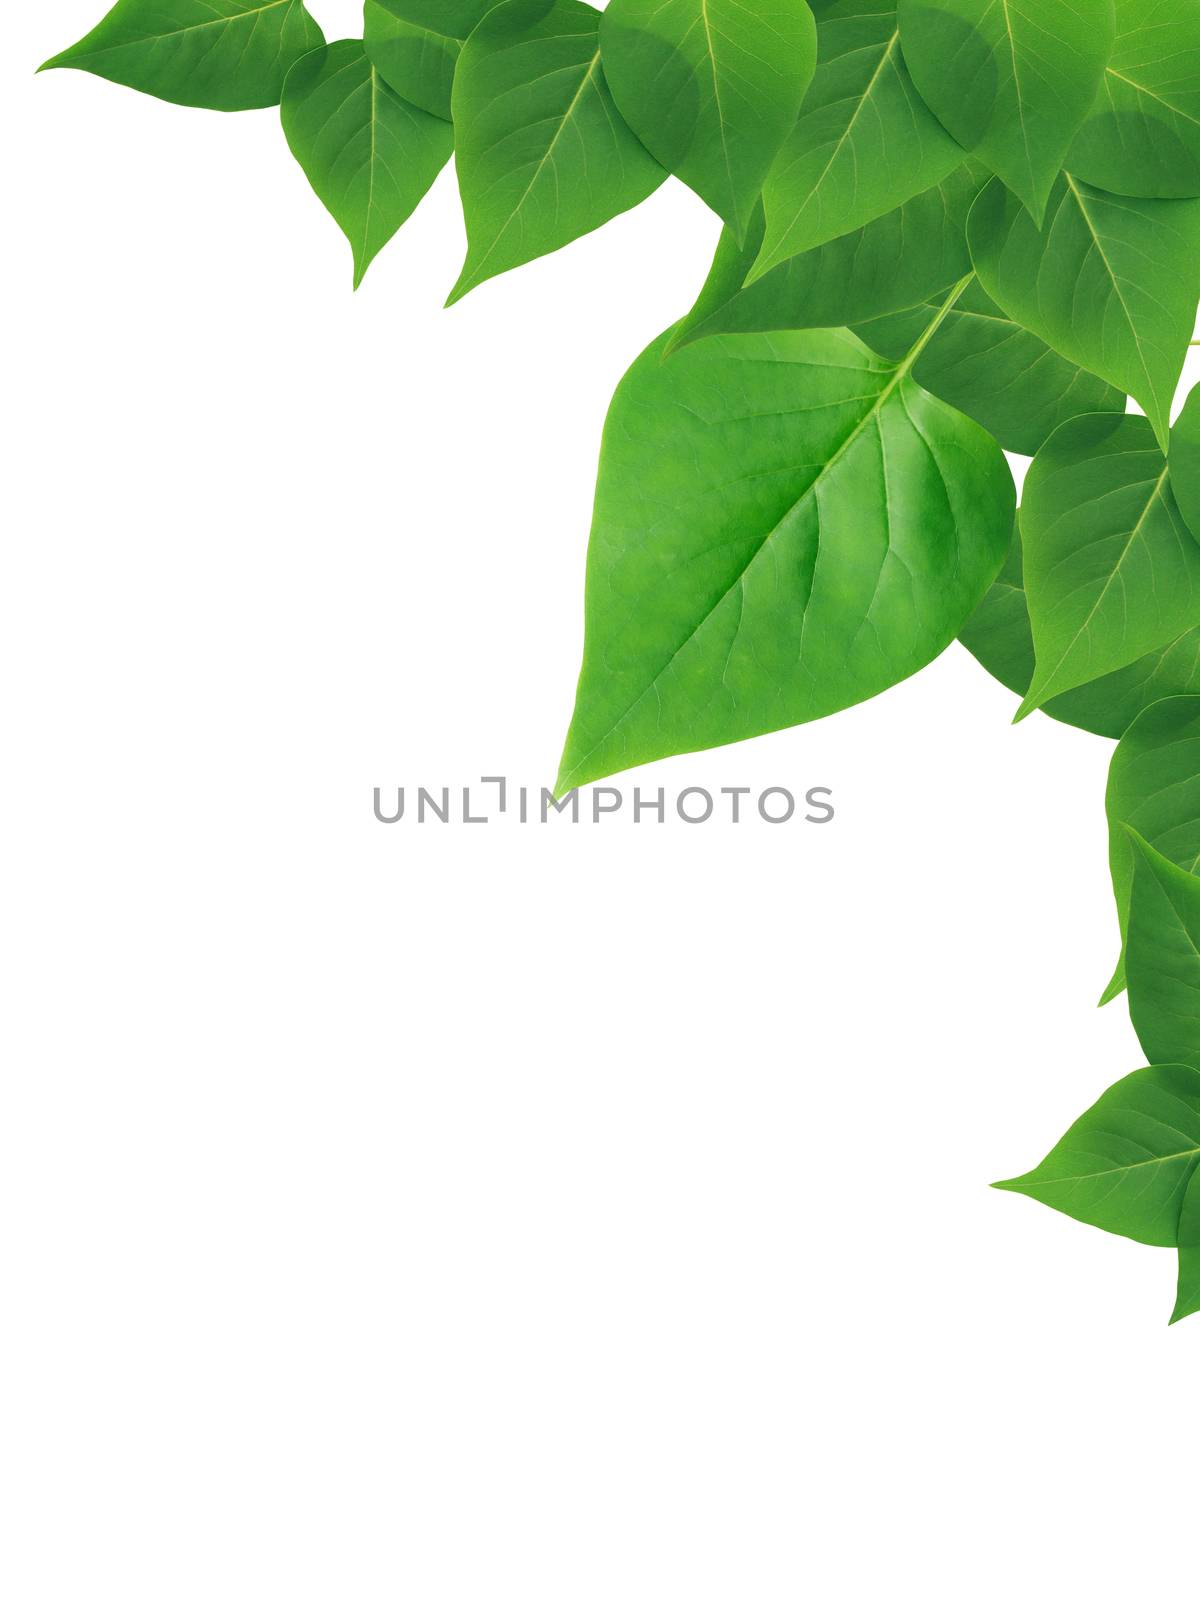 Green Leaves Border by kvkirillov